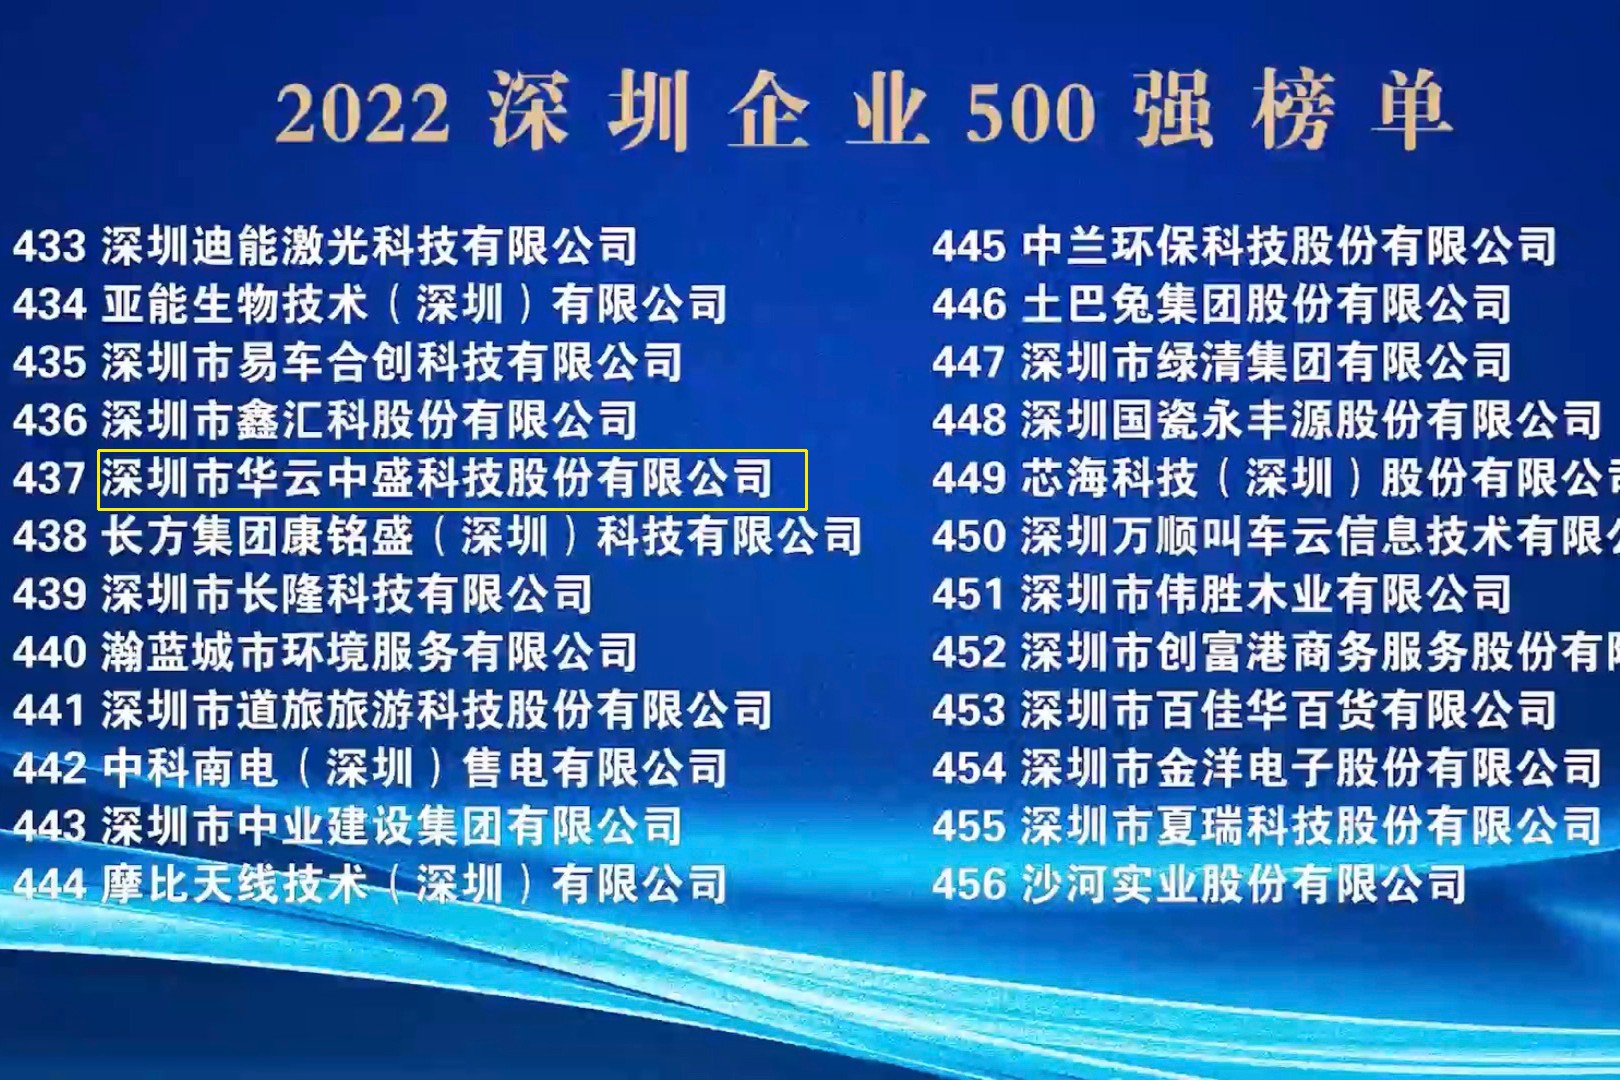 喜讯：3354cc金沙集团再次荣登“深圳500强企业榜单”